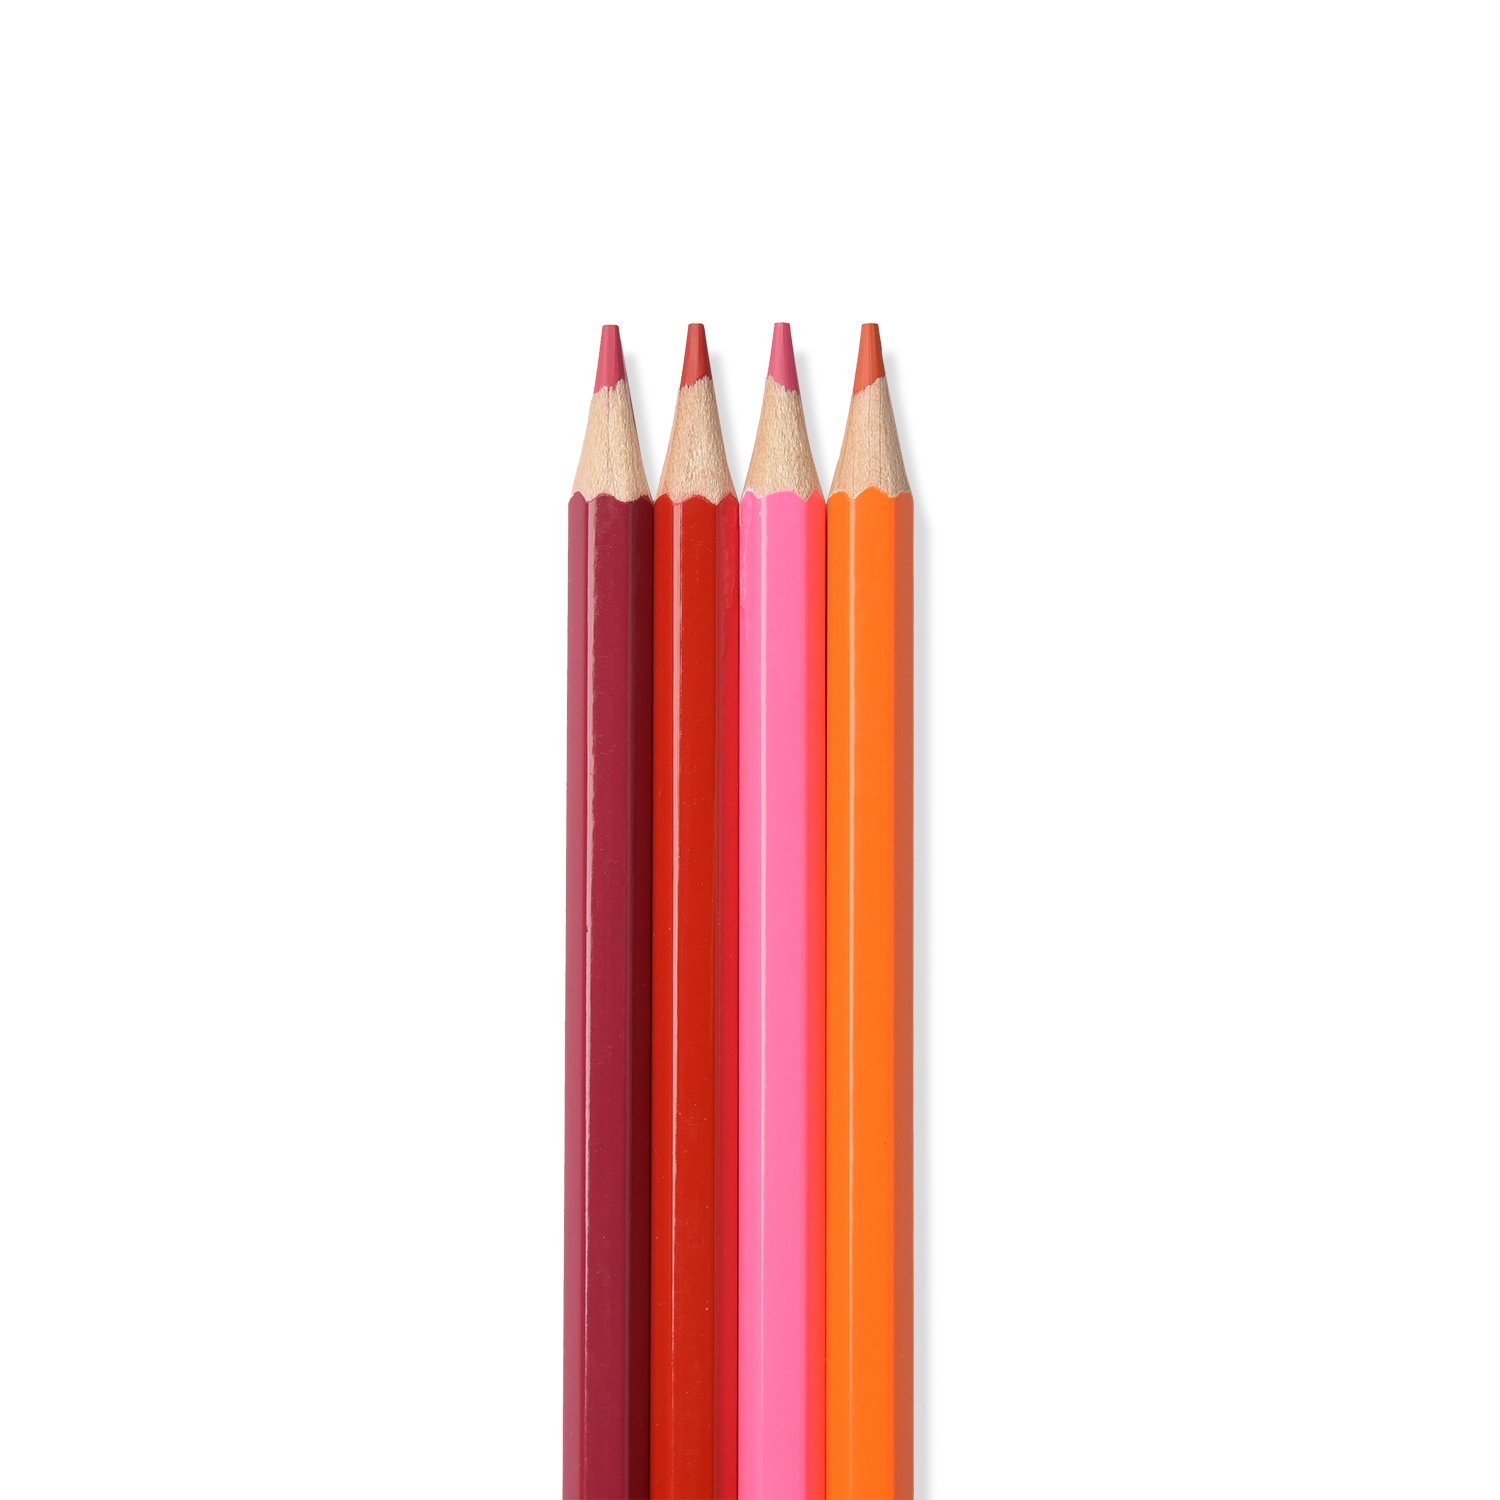 Цветные карандаши Каляка-Маляка 12 цветов шестигранные  по цене 9 .